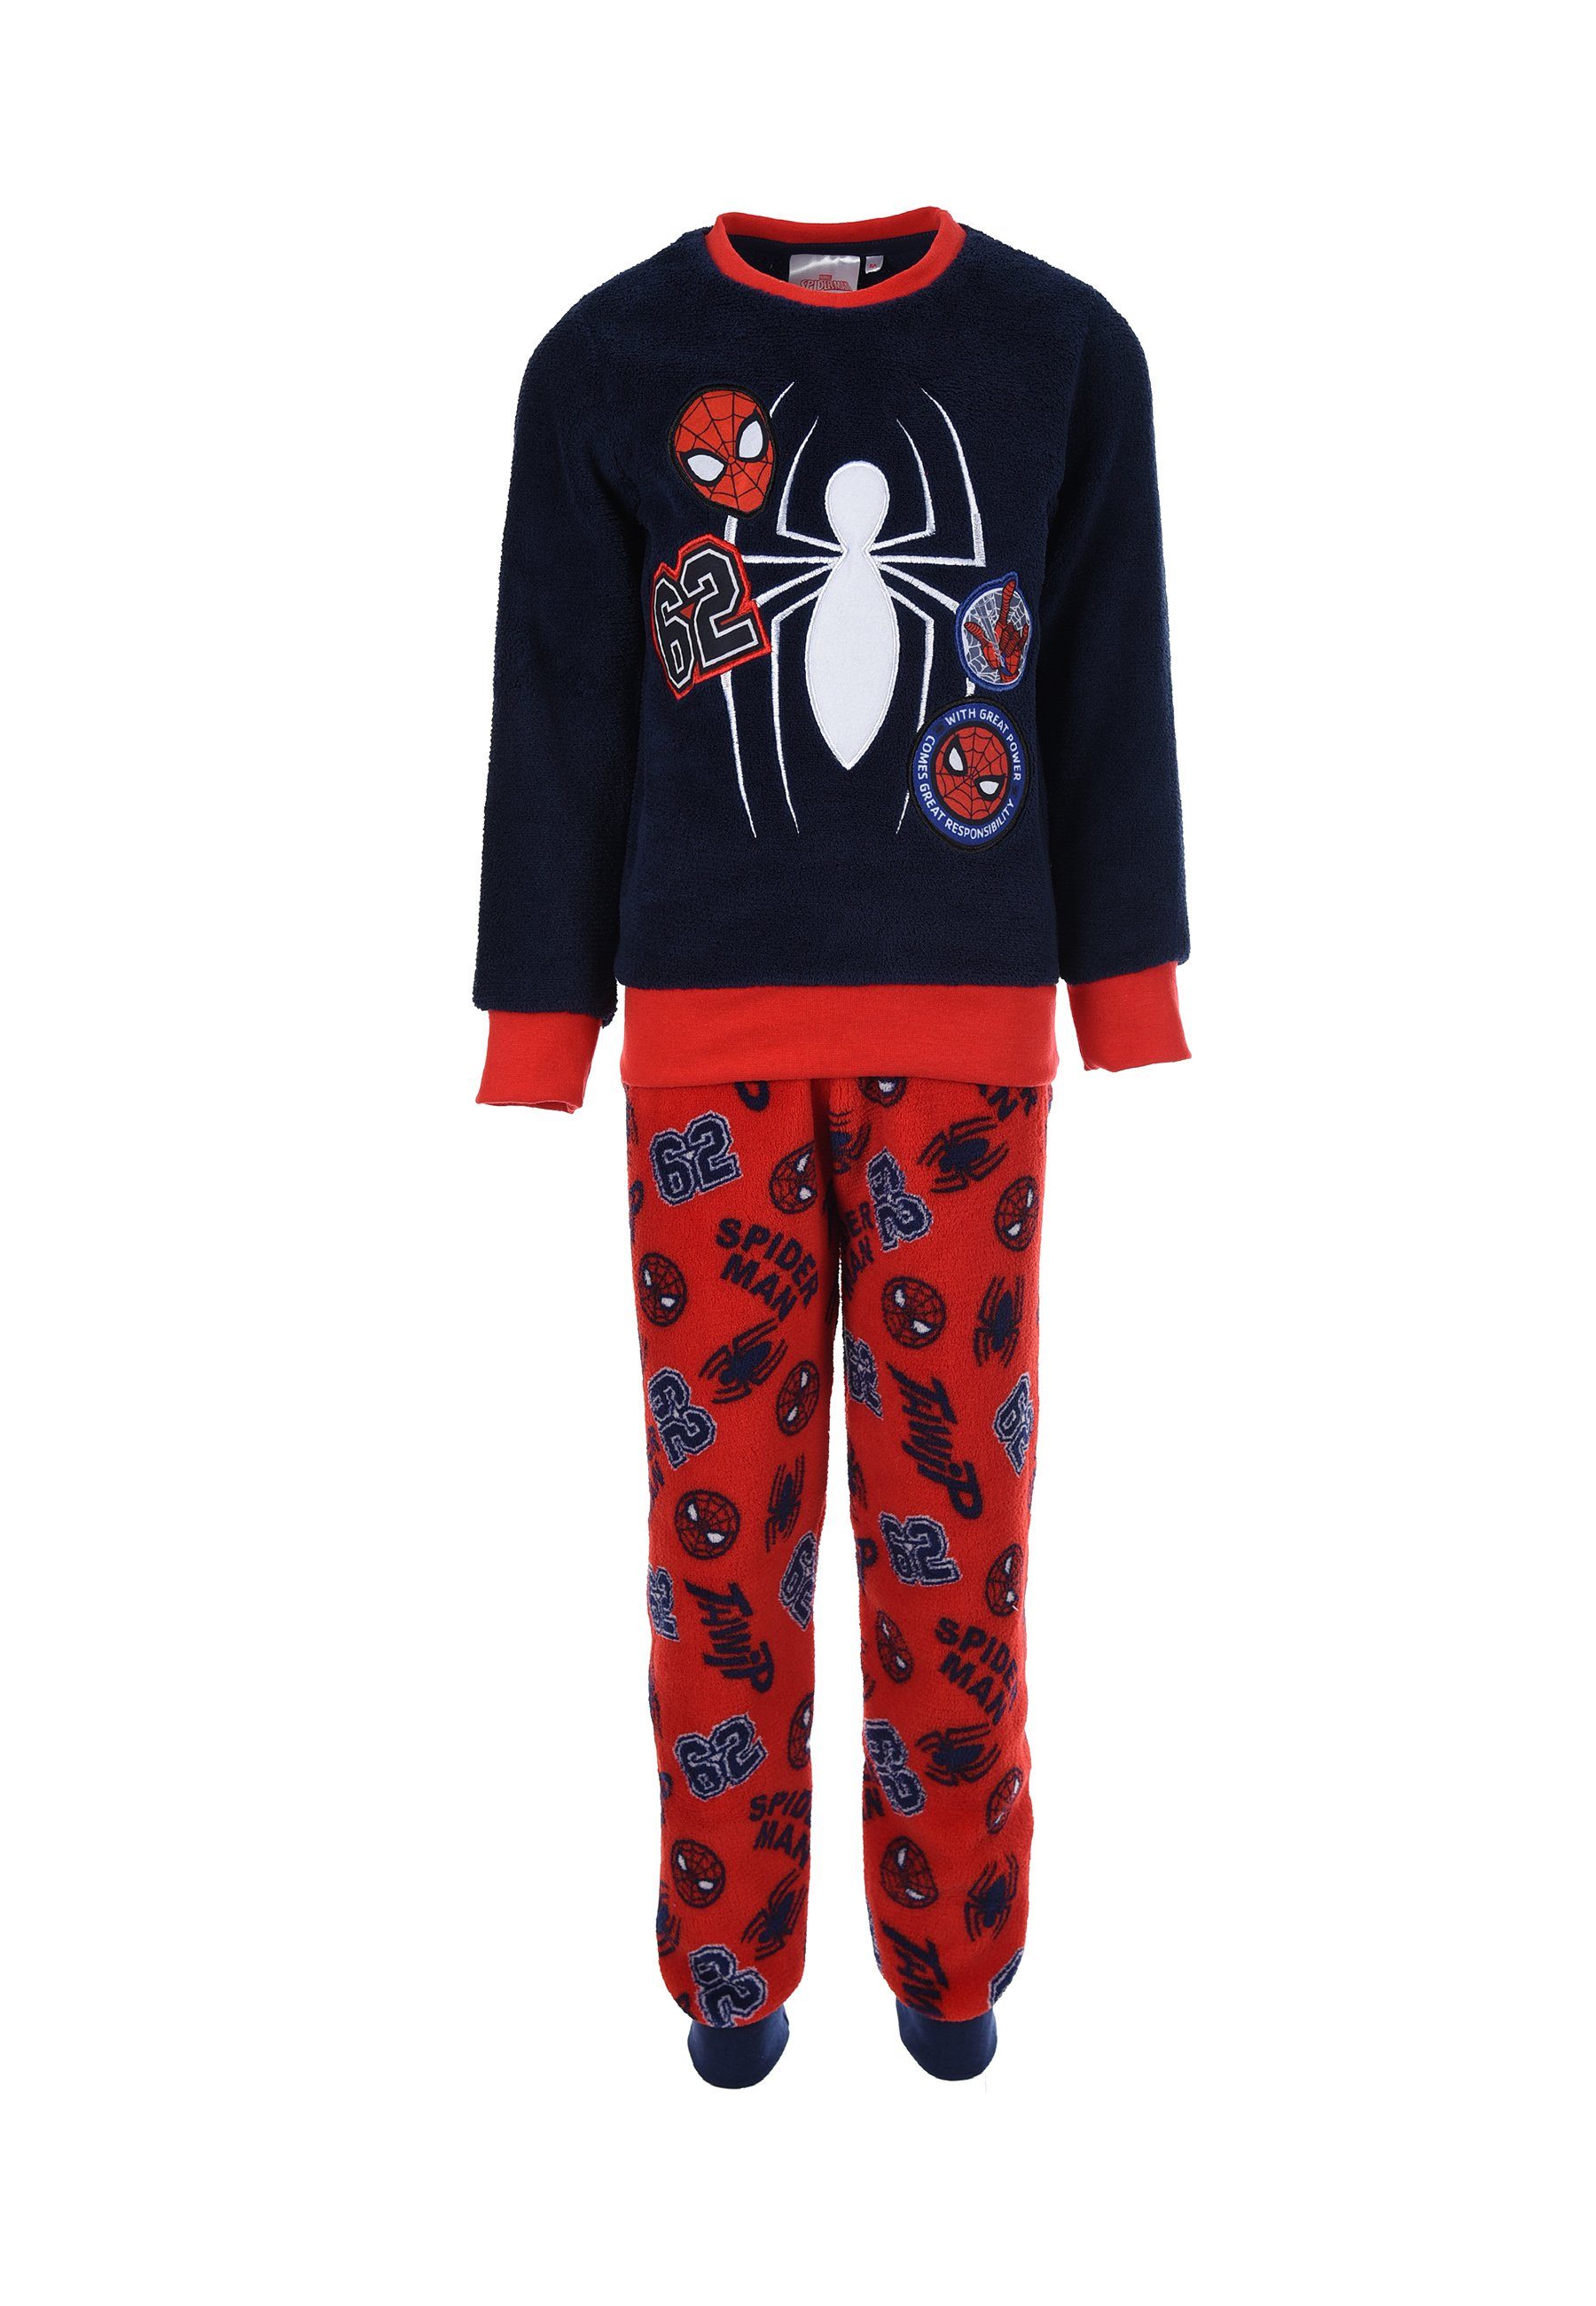 Baby Kinder Junge Lightning McQueen Schlafanzug Langarm Pyjama Nachtwäsche Sets 